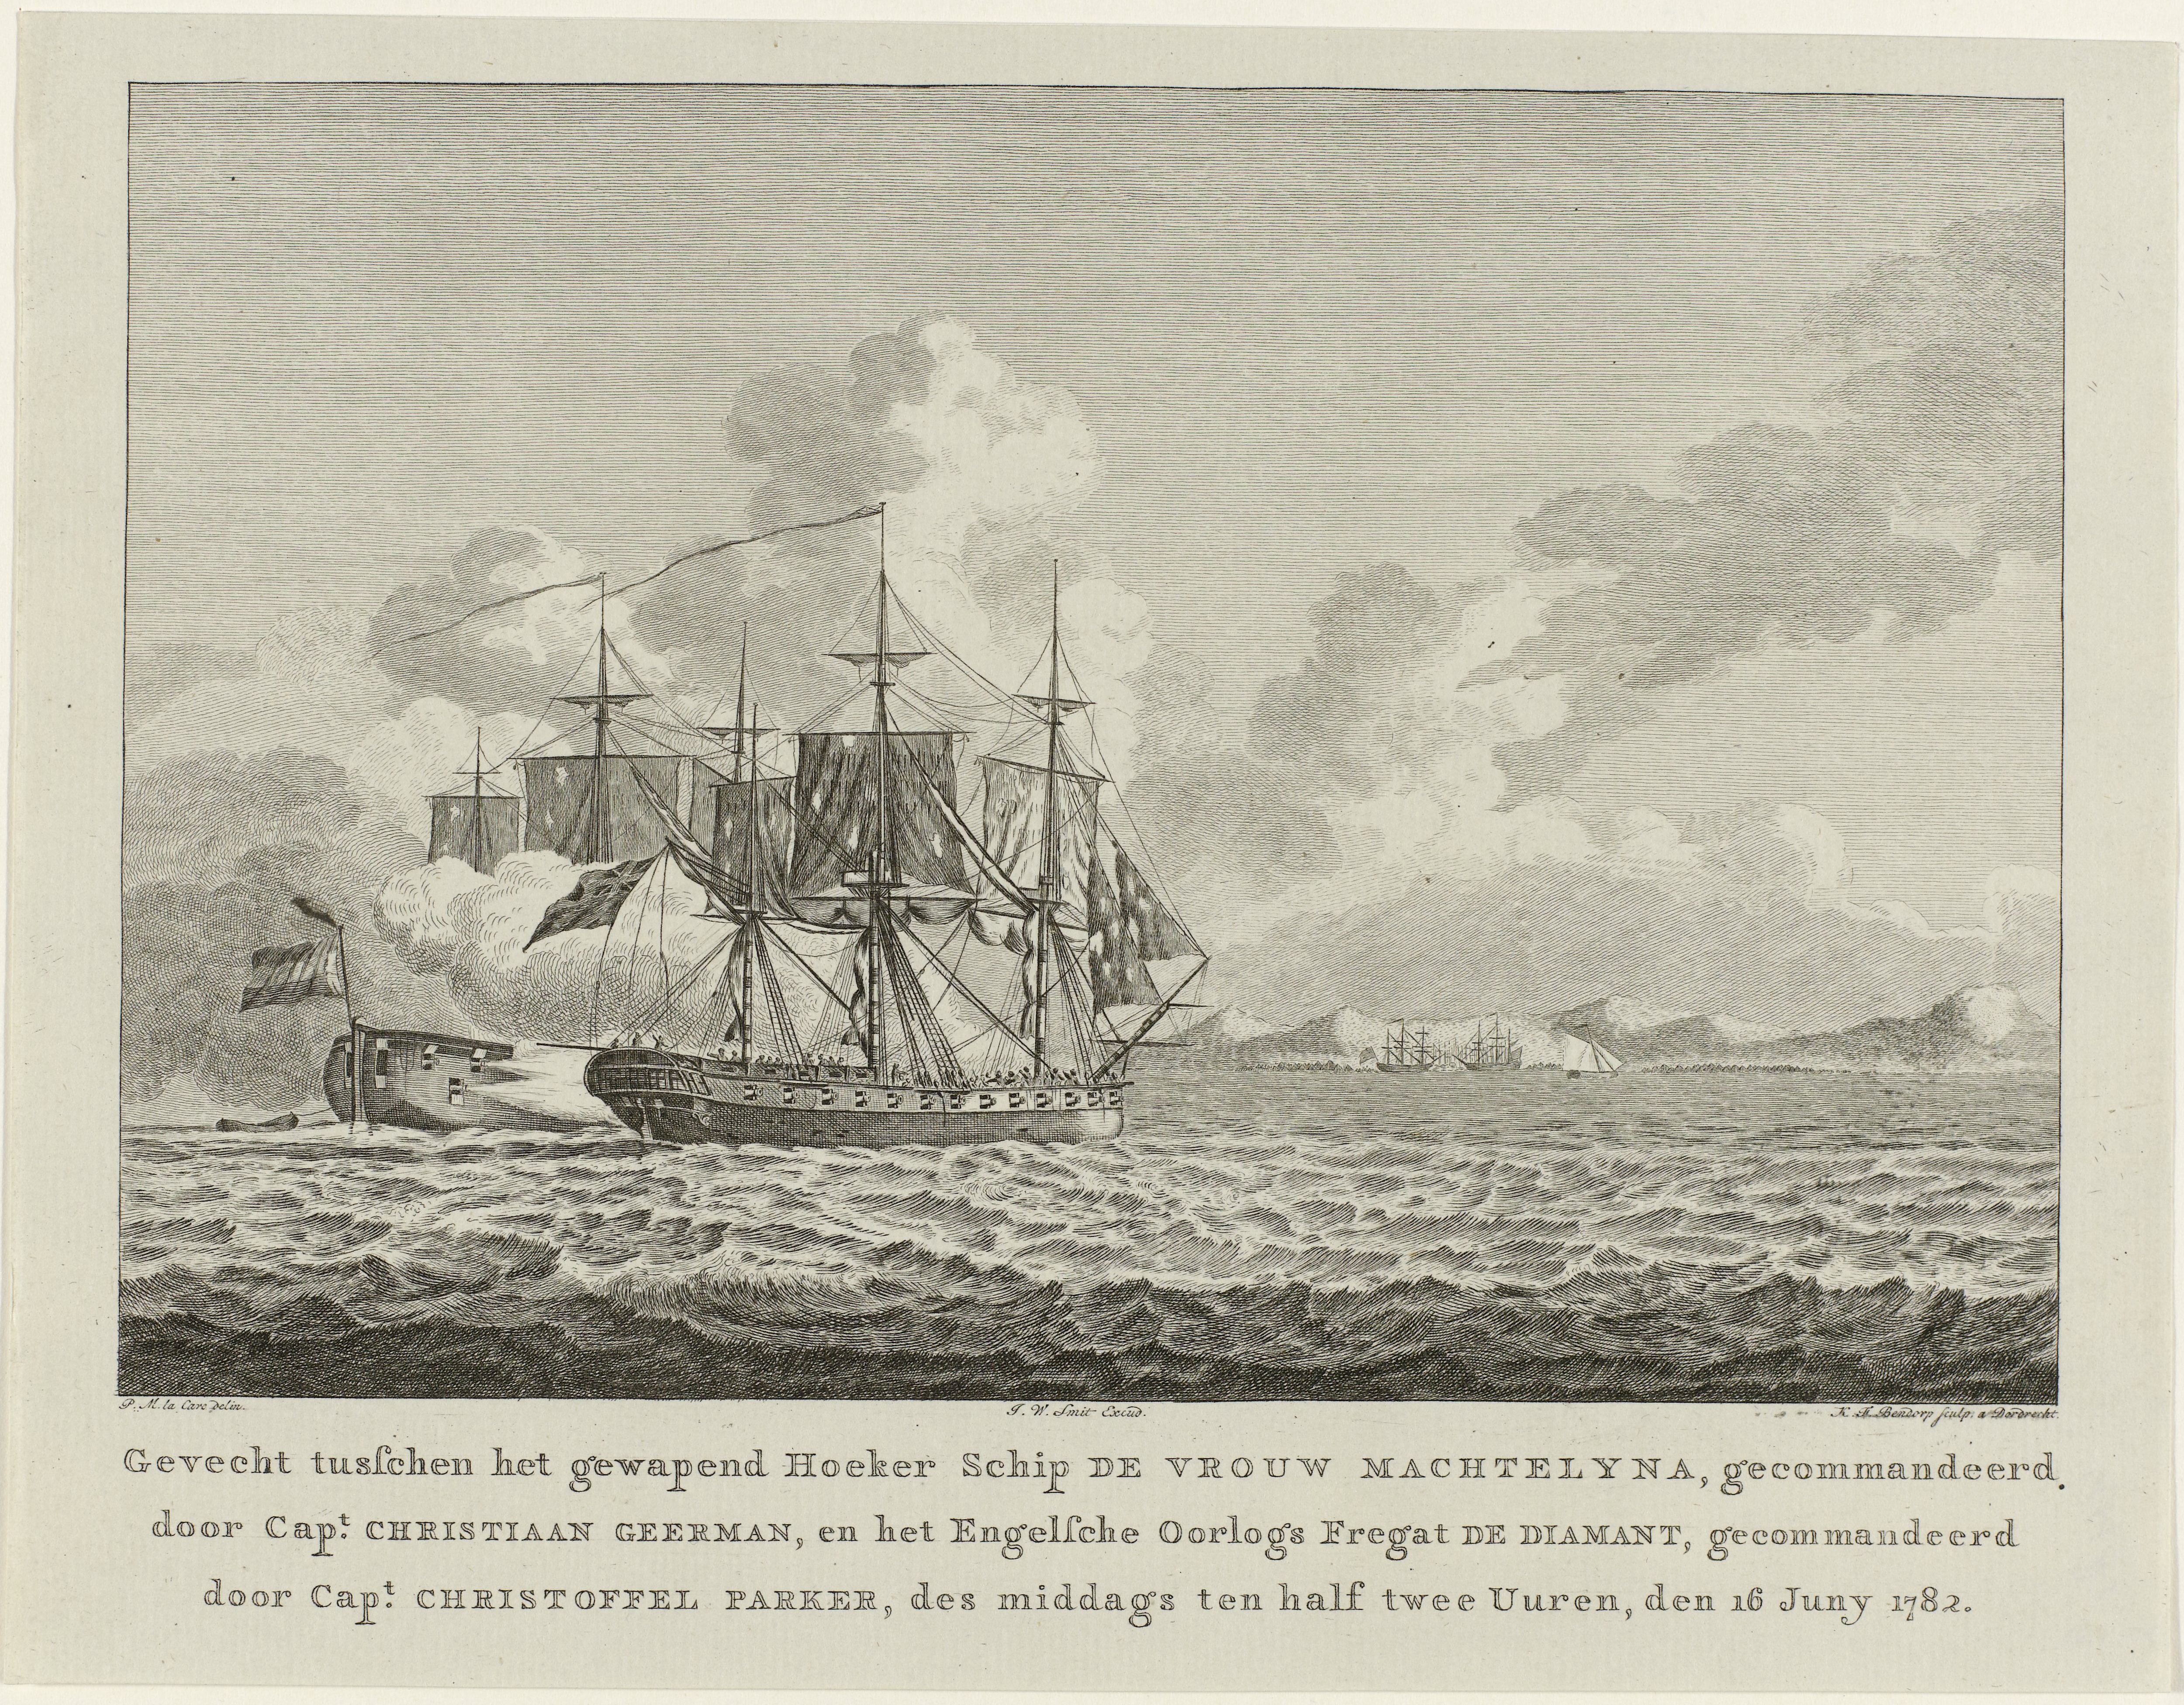 Gevecht tussen hoekerschip Vrouw Machtelyna en Engels fregat Diamant voor de haven van Curaçao, 1782, Carel Frederik Bendorp (I), naar P.M. la Cave, 1782, bron: Rijksmuseum, RP-P-OB-85.233